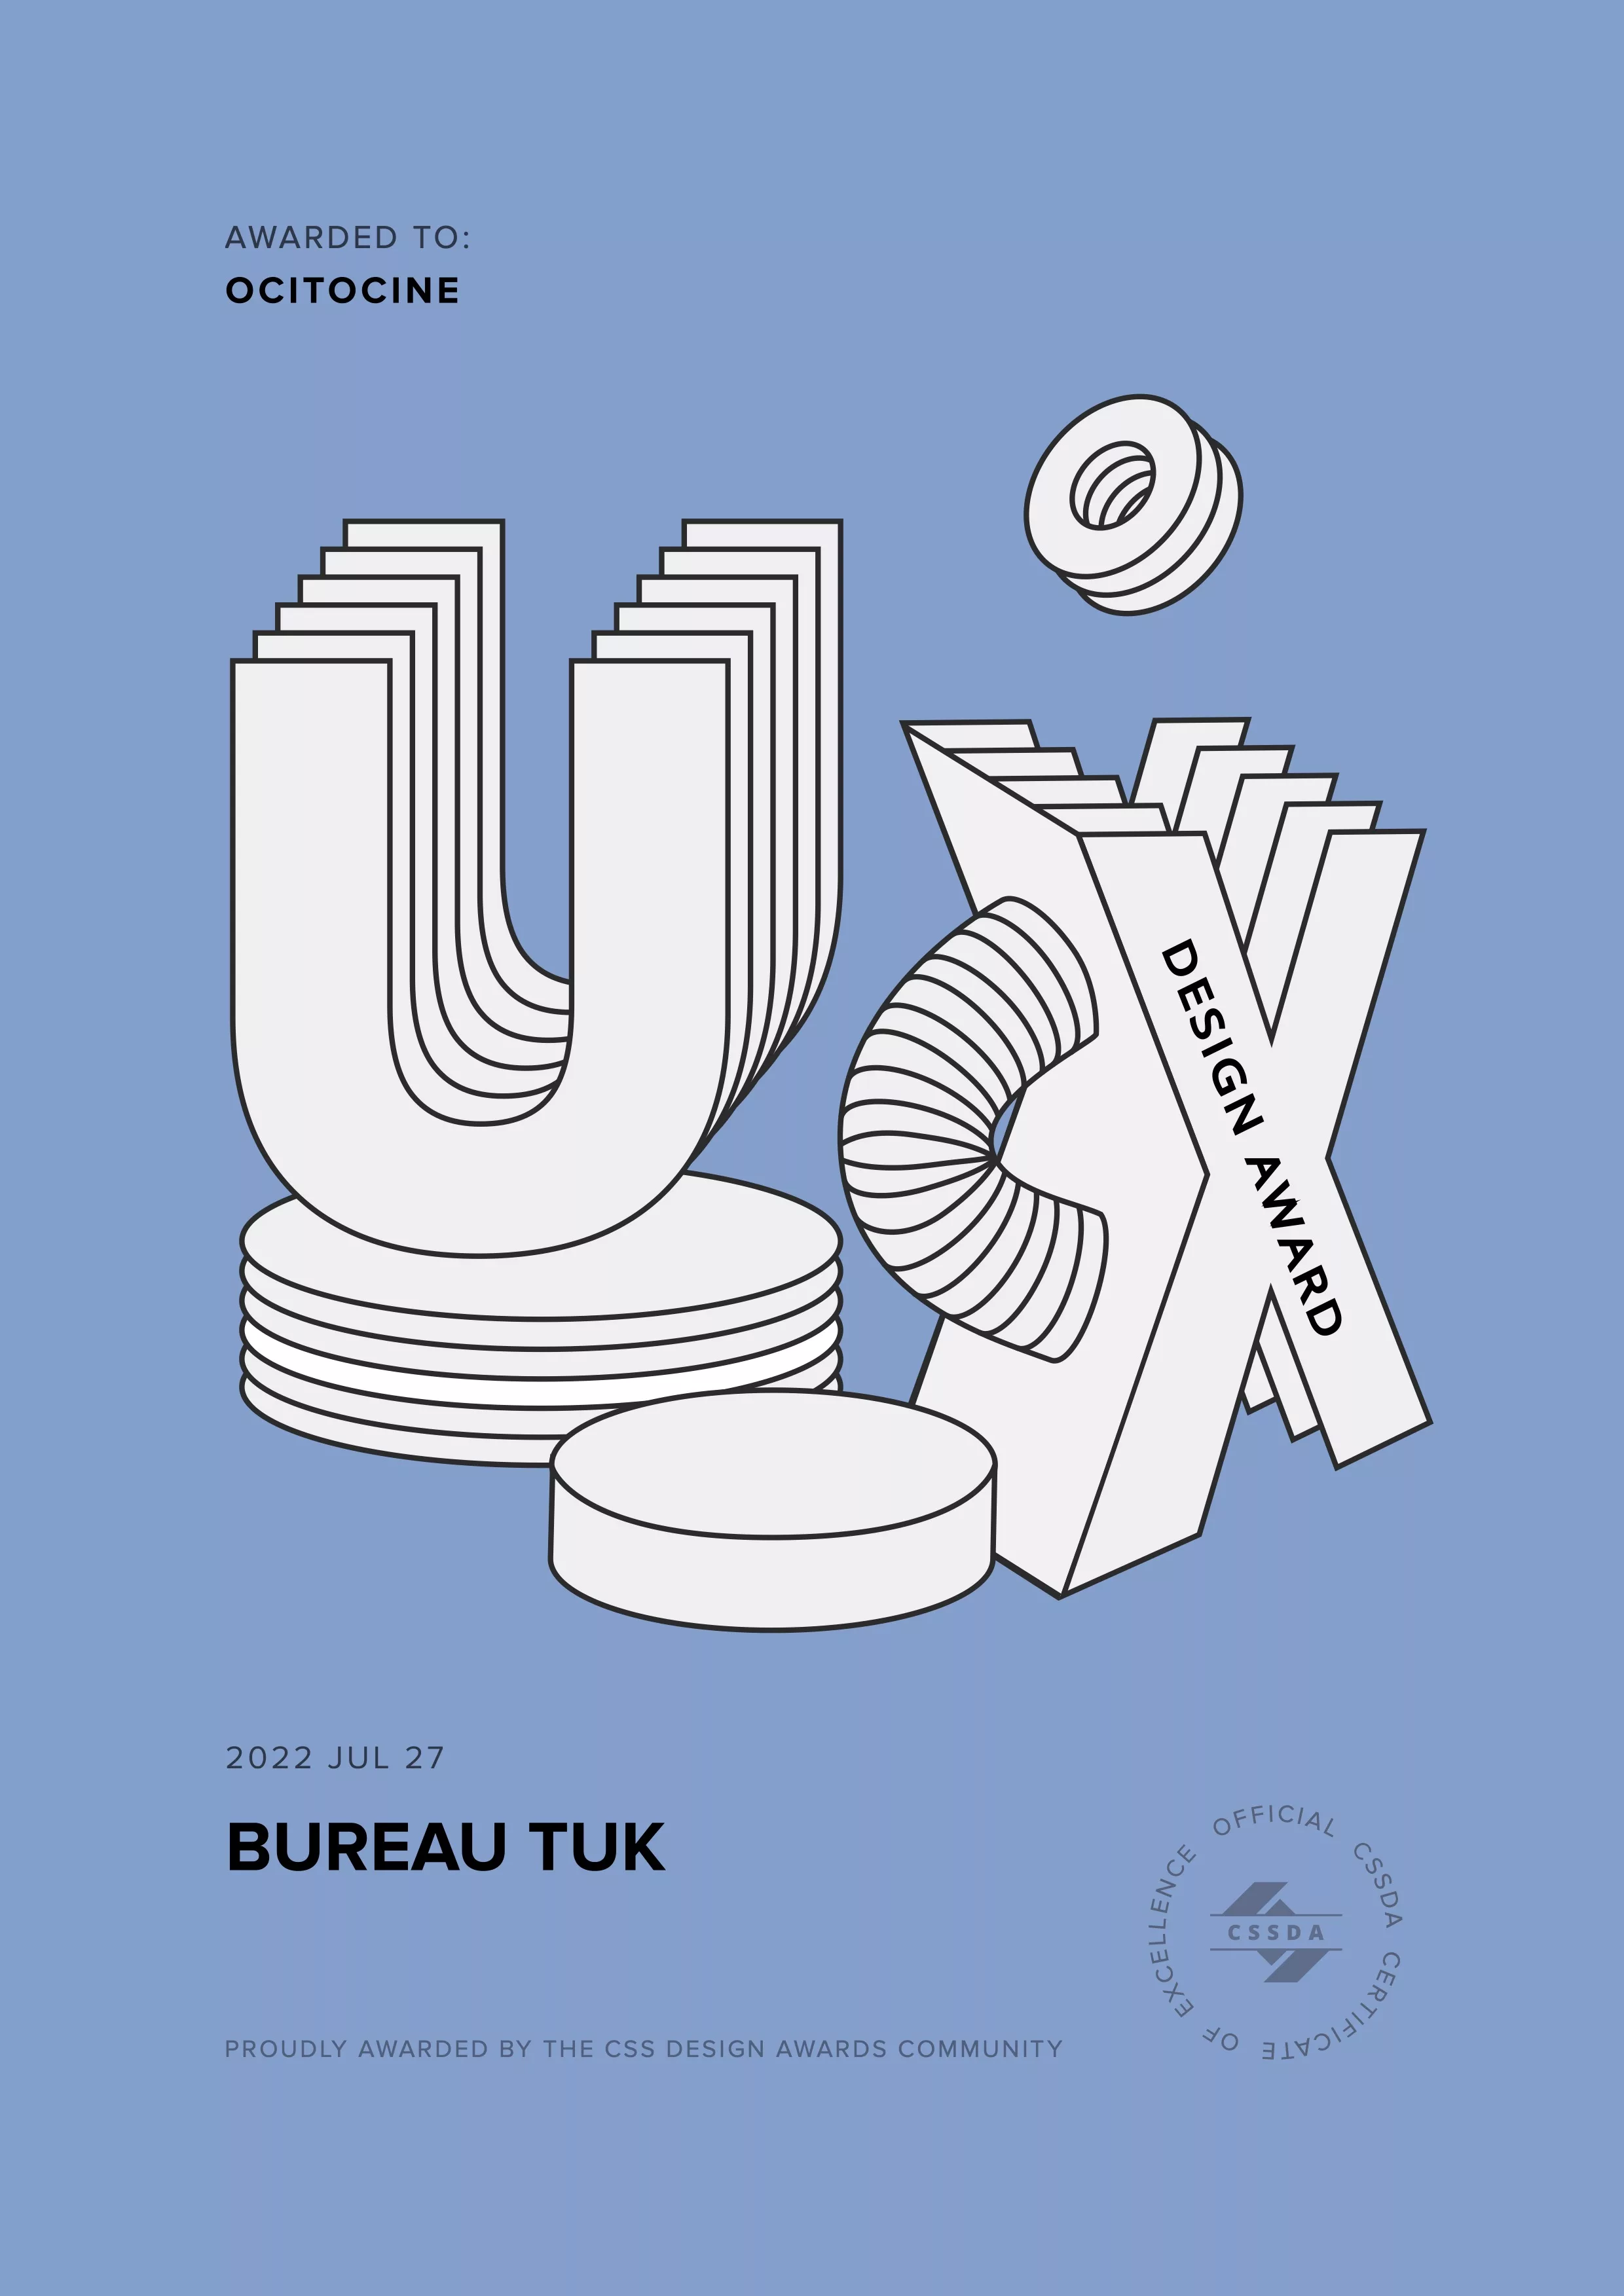 Ocitocine, agence créative web et branding, a remporté un prix "CSSDA UX Design Award" pour la réalisation du site web bureautuk.ch